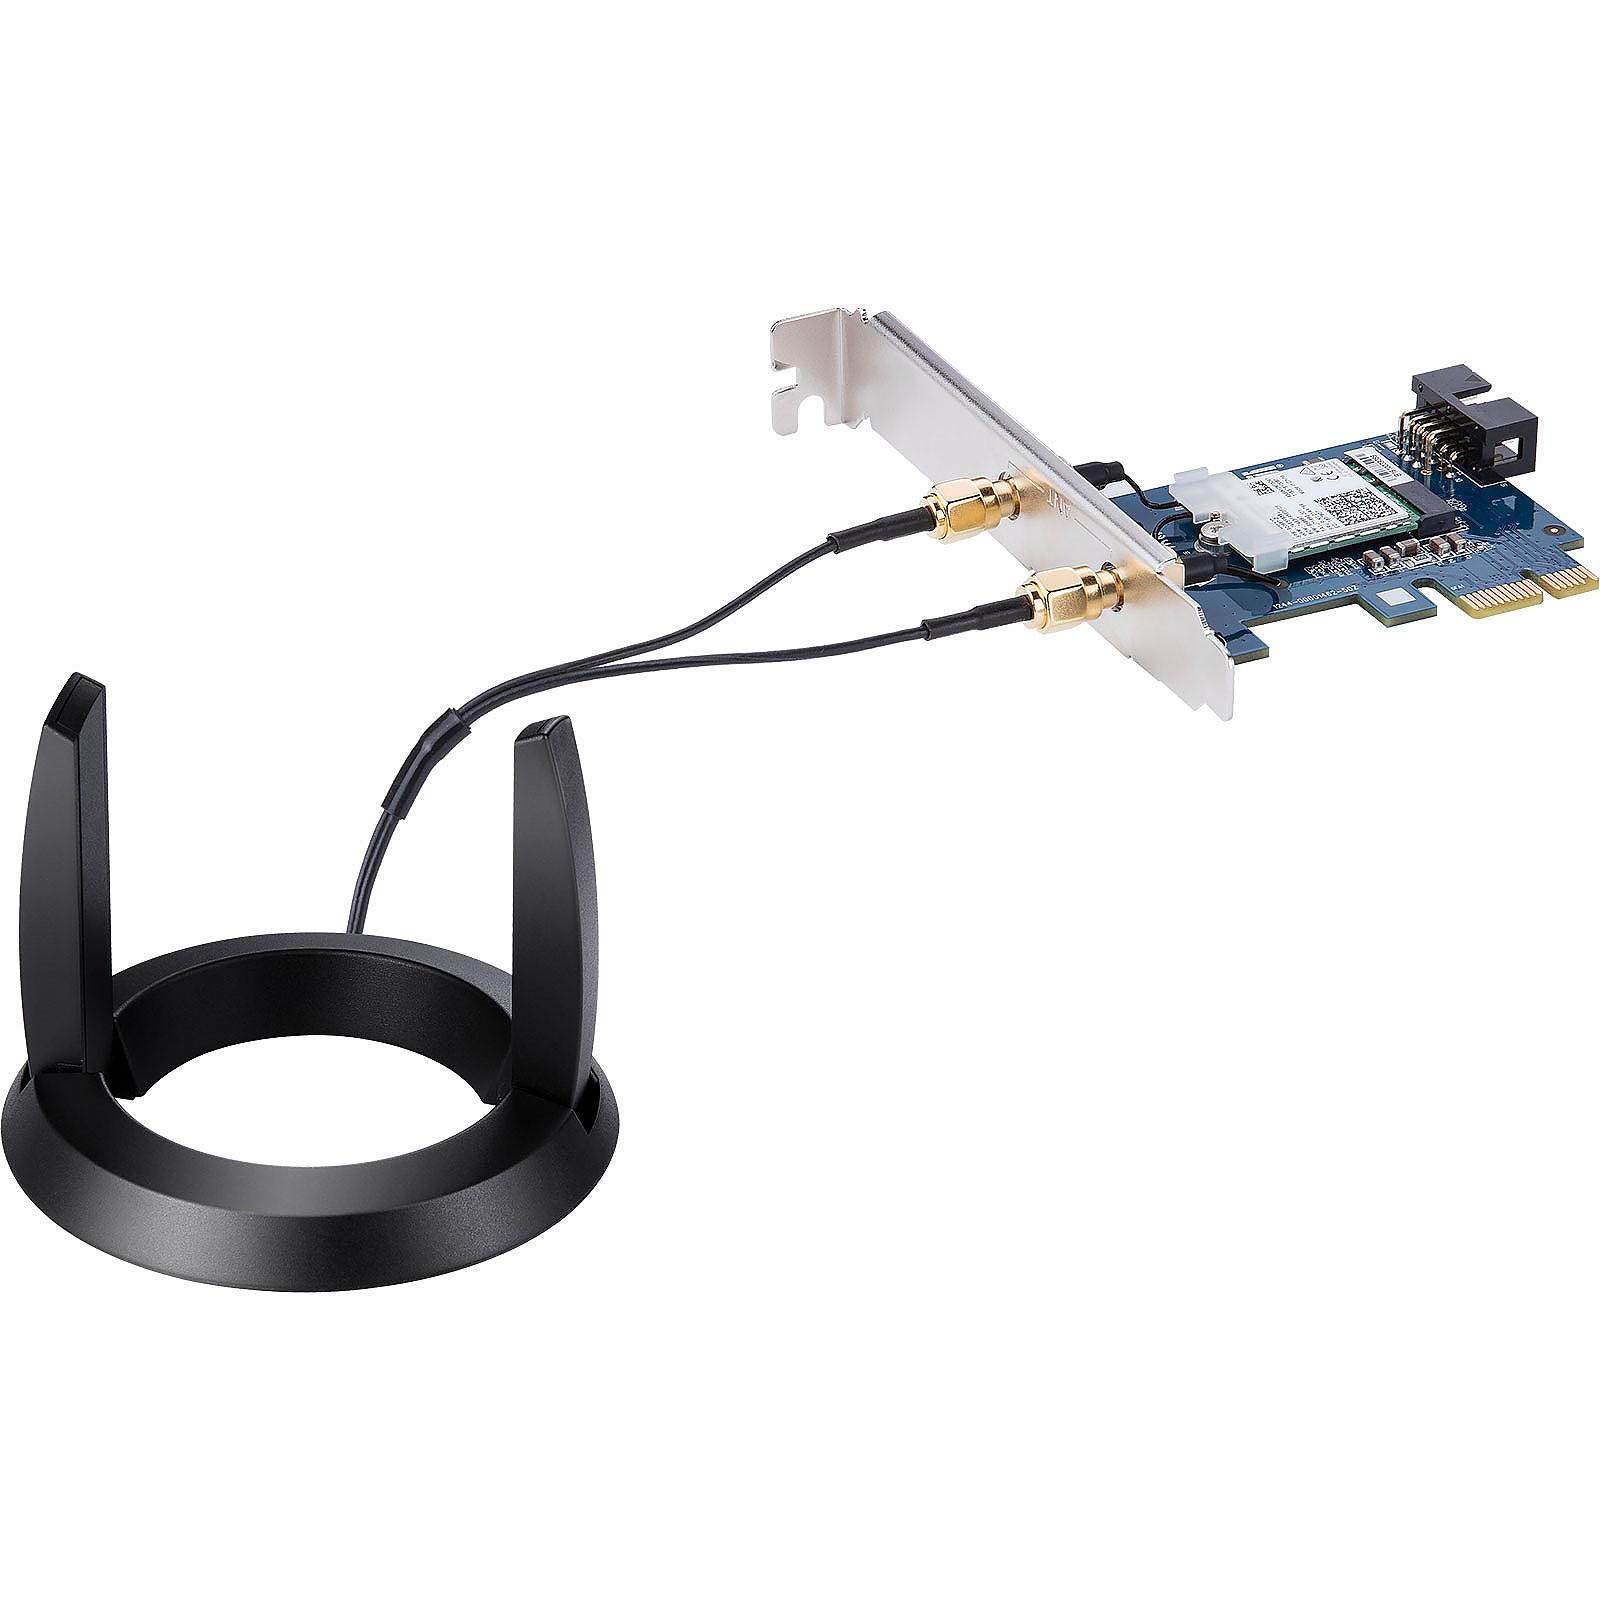 PCI-E Dual-Band AC2100 Wi-Fi+Bluetooth 5.0